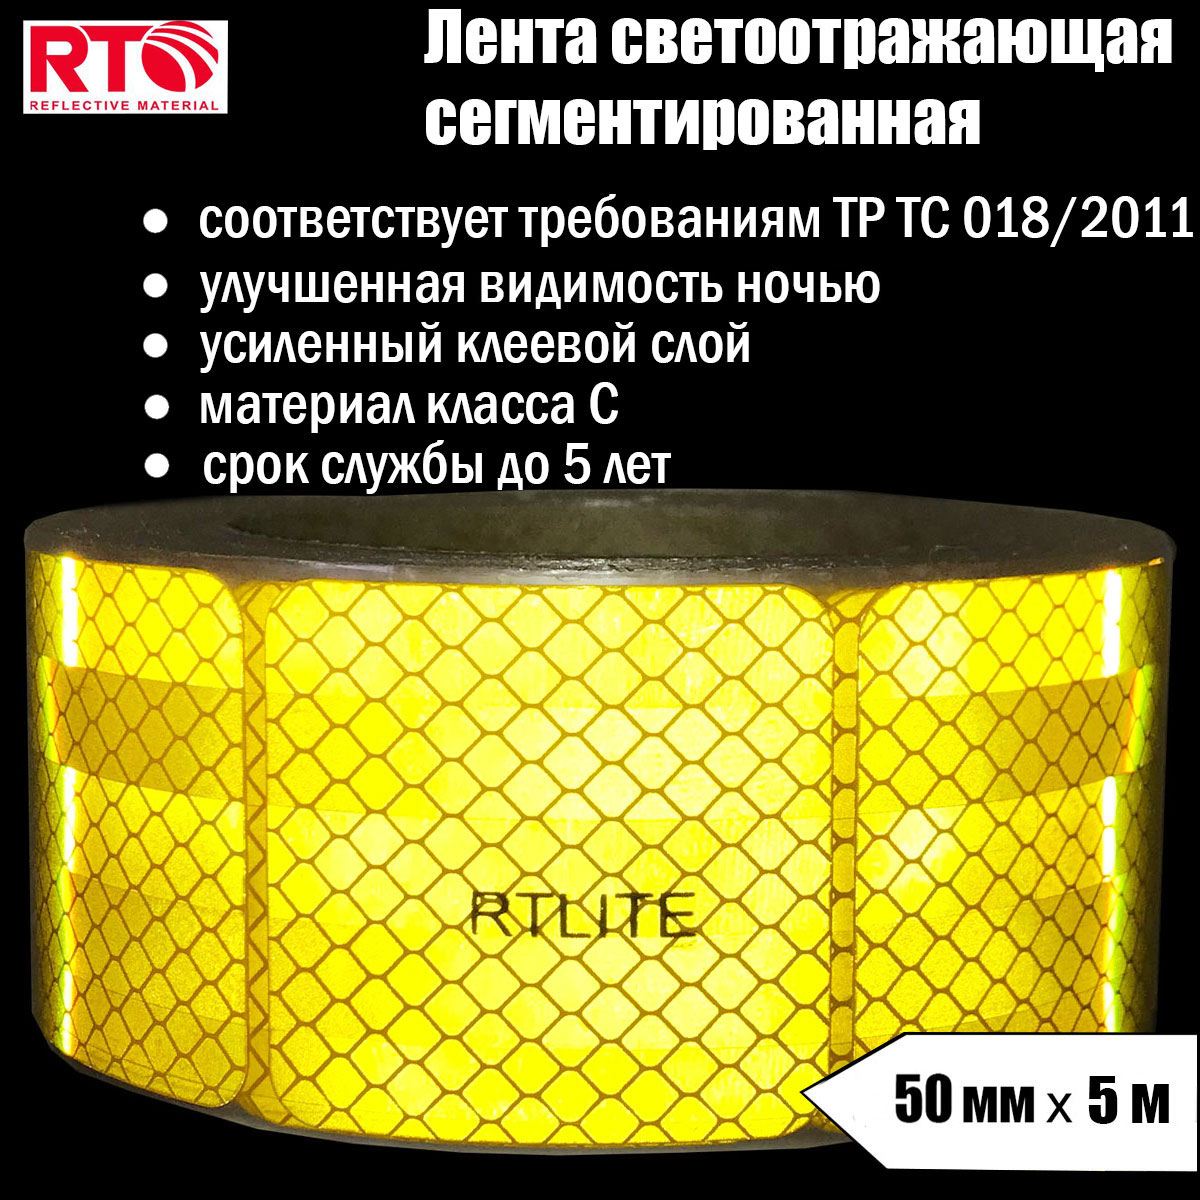 Лента светоотражающая сегментированная RTLITE RT-V104 для контурной маркировки, 50мм х 5м лента светоотражающая сегментированная rtlite rt v104 для контурной маркировки 50мм х 50м